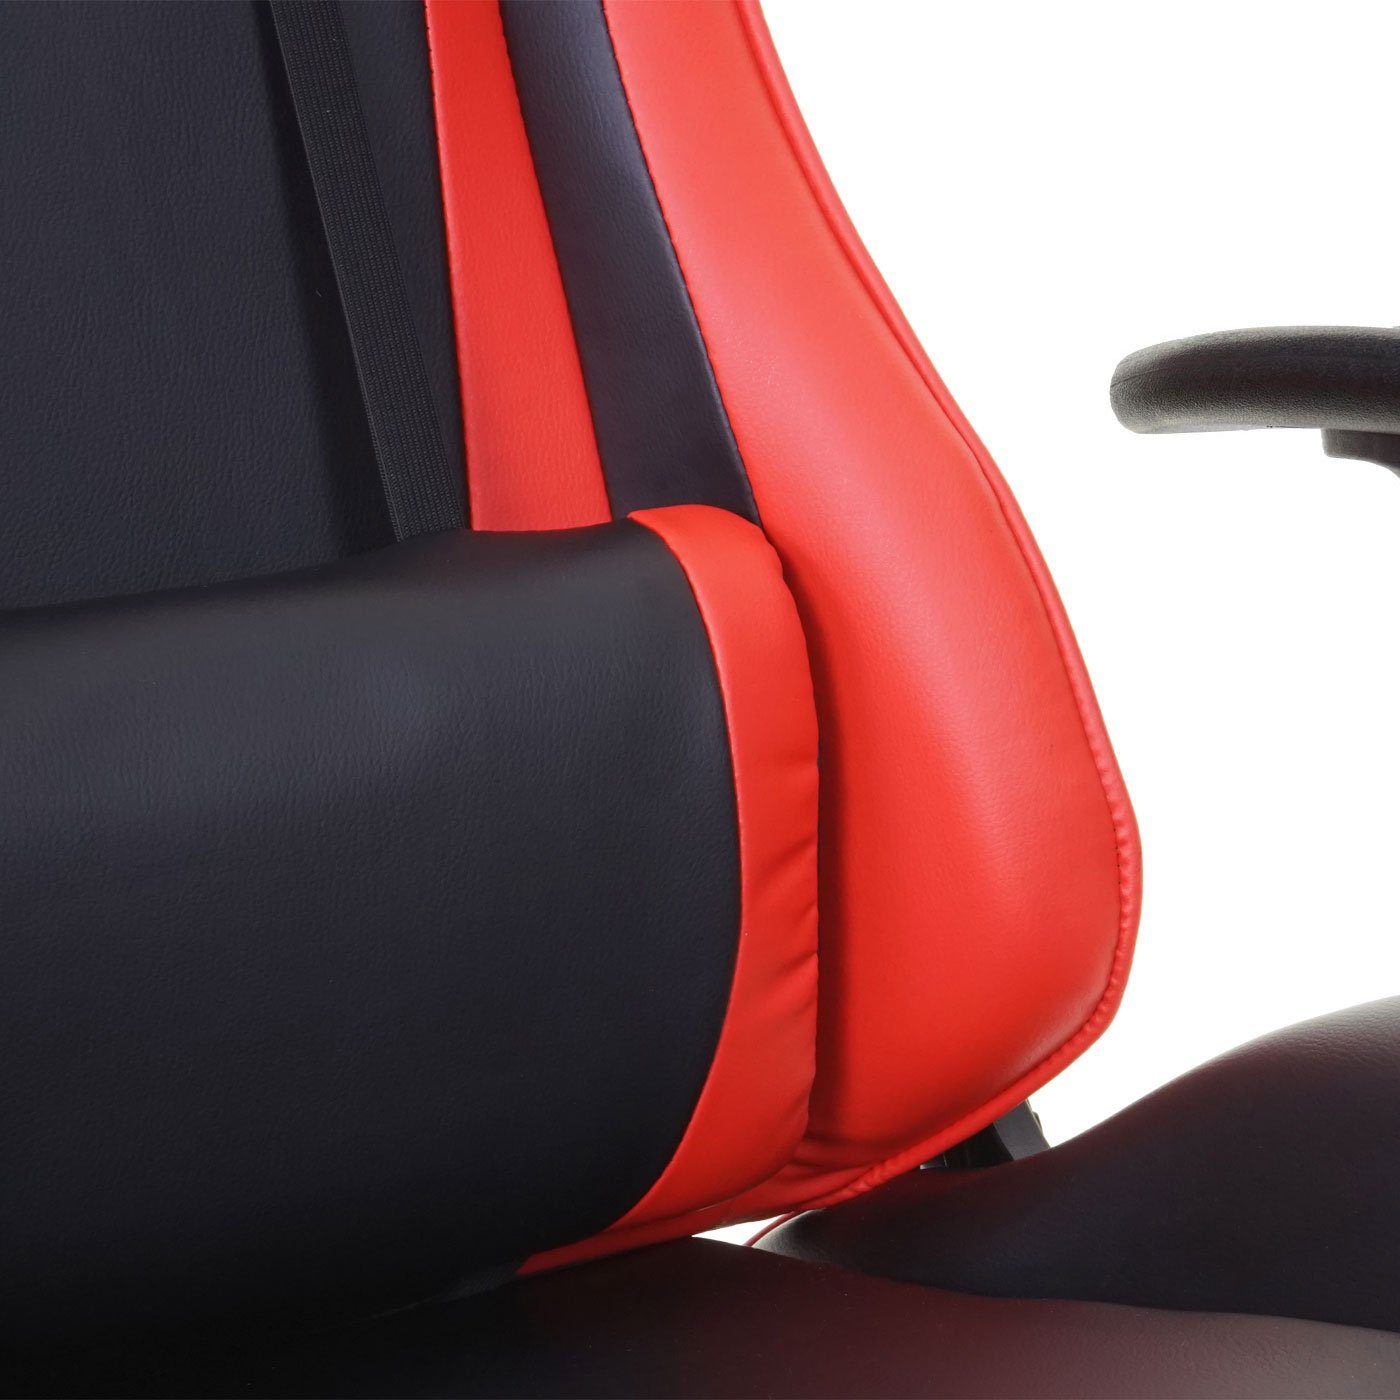 MCW-D25-K, MCW Nackenkissen Inkl. Sitz, einstellbar, schwarz,rot Schreibtischstuhl Wippmechanik Höhenverstellbarer